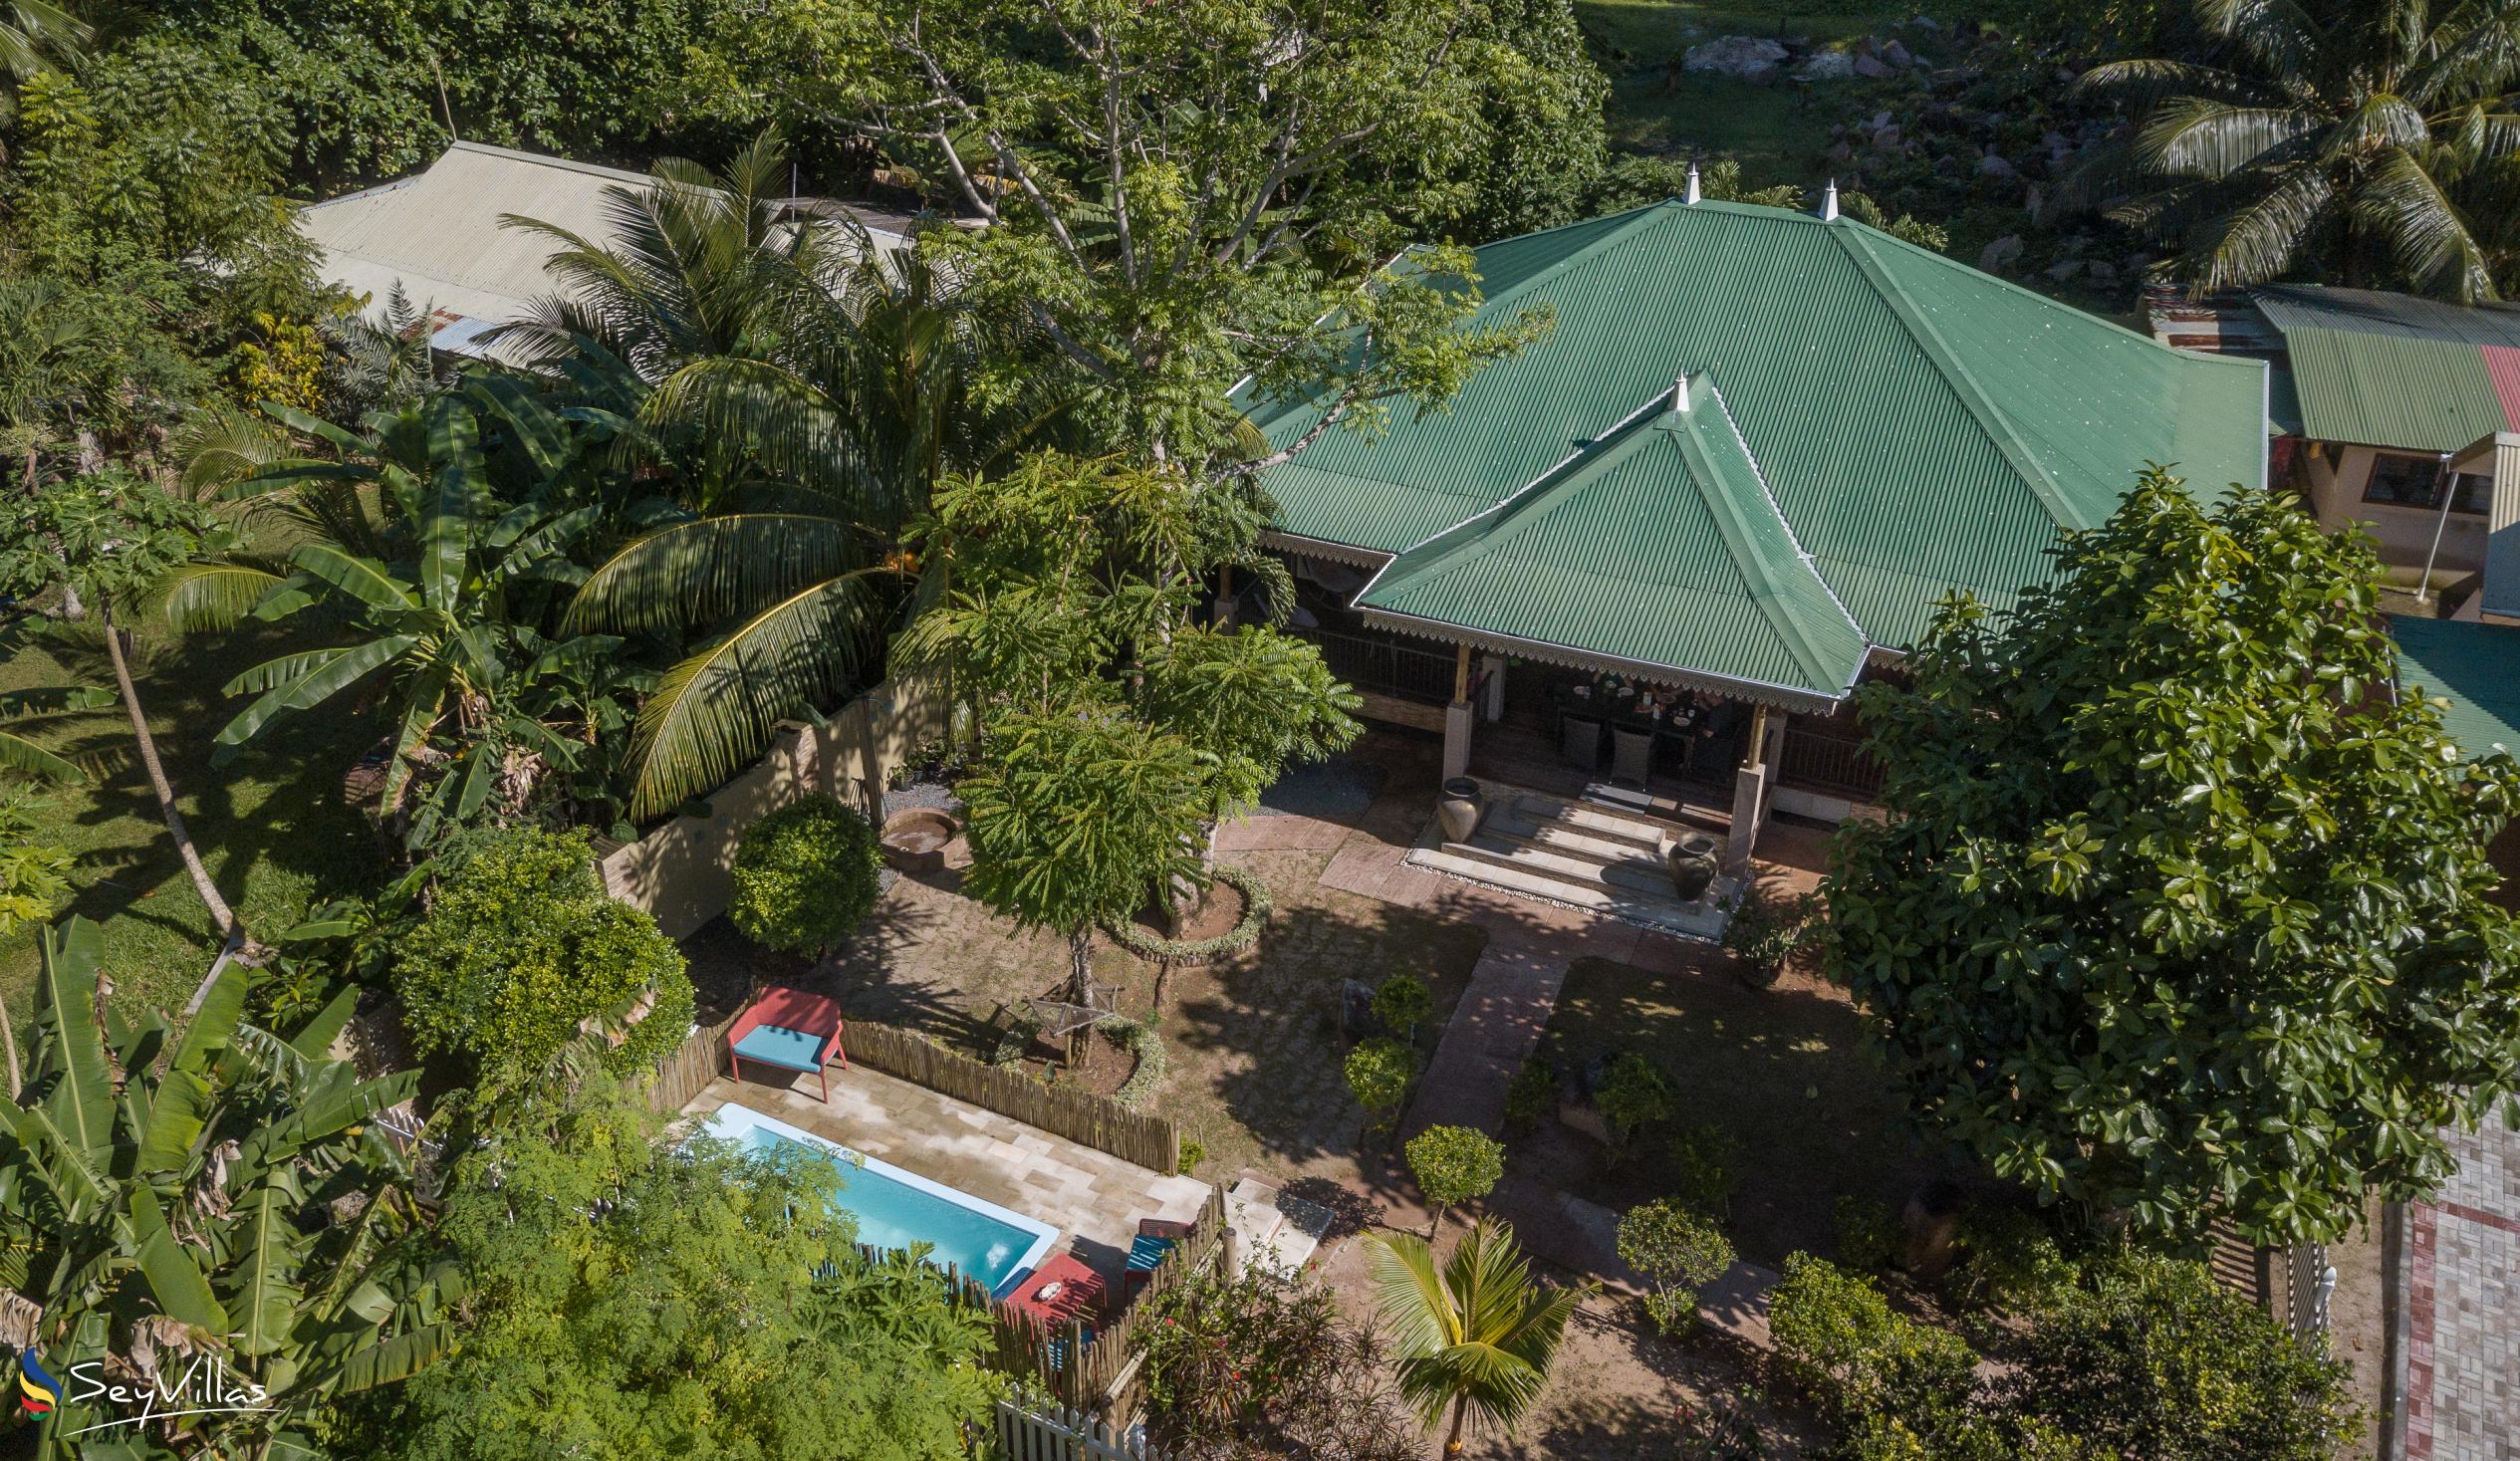 Photo 76: Casa de Leela - 2-Bedroom Luxury Bungalow with Private Plunge Pool - La Digue (Seychelles)